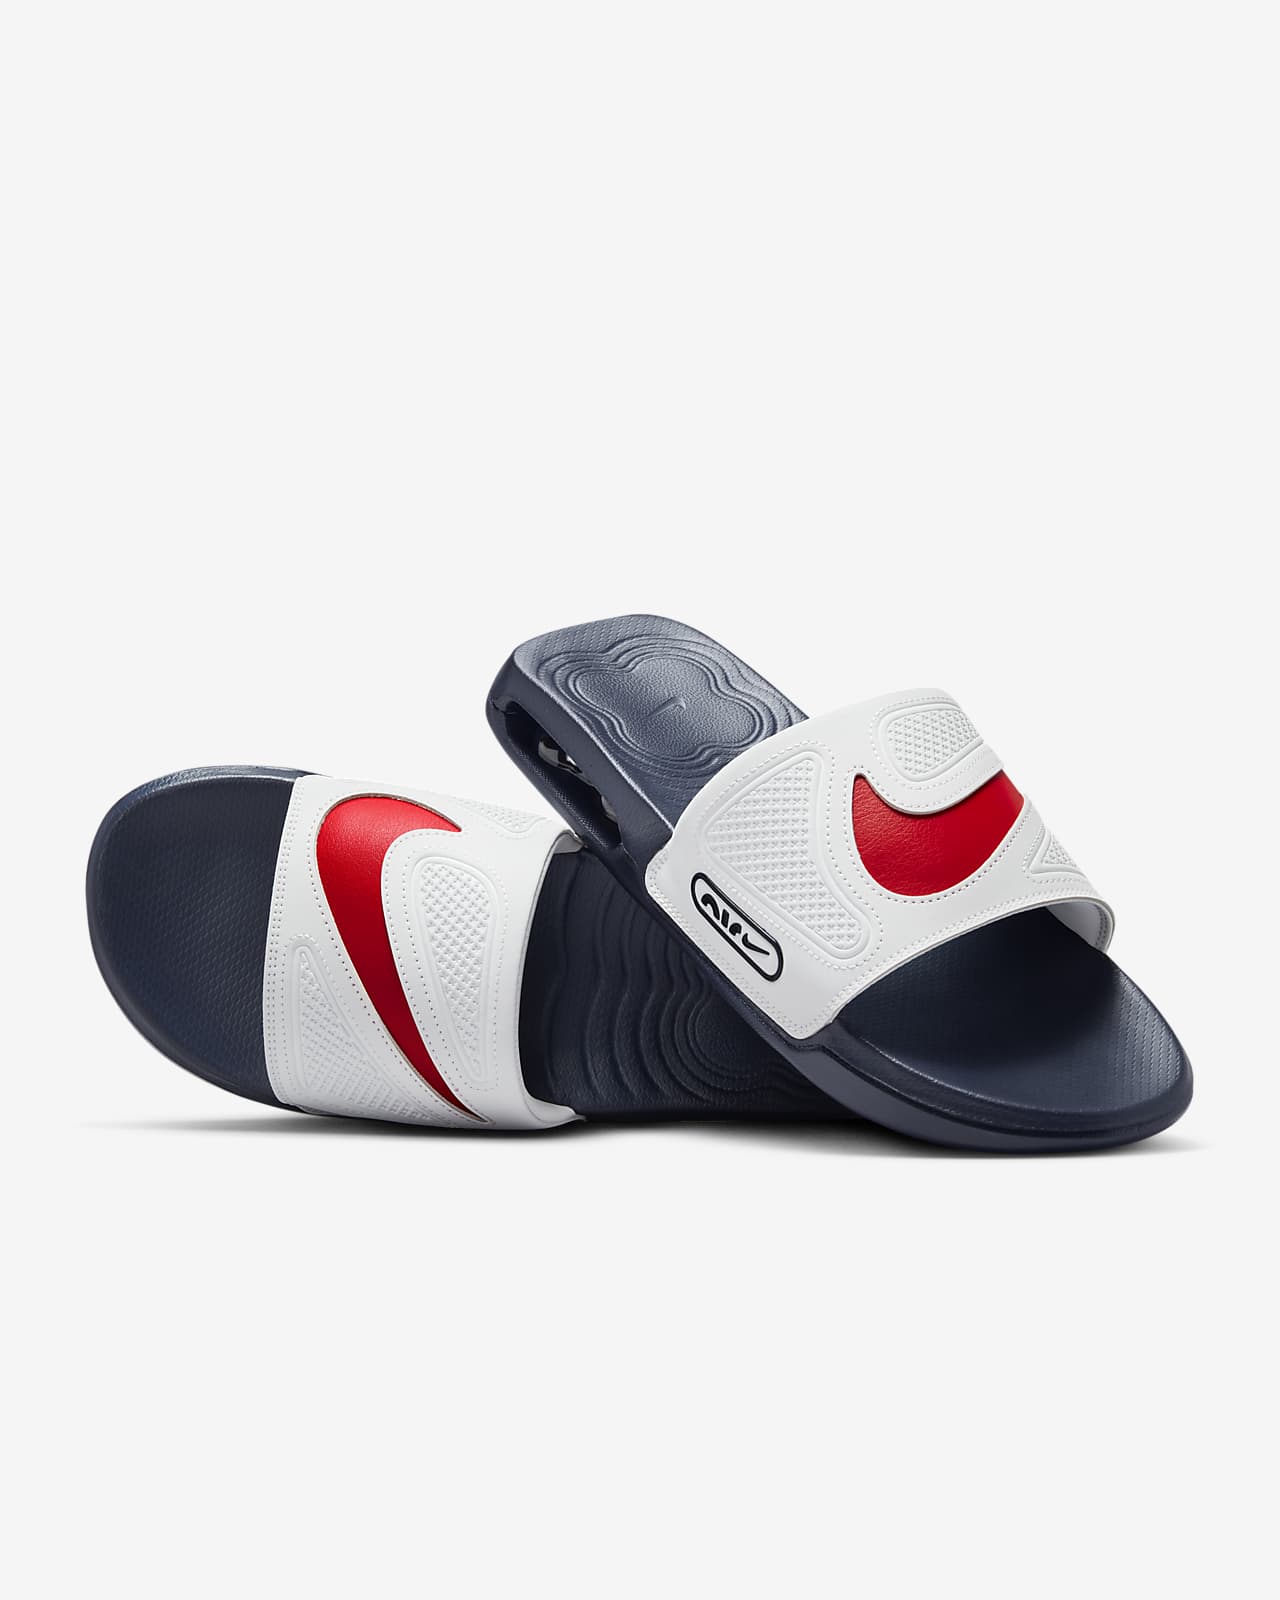 Nike Max Cirro Men's Slides.